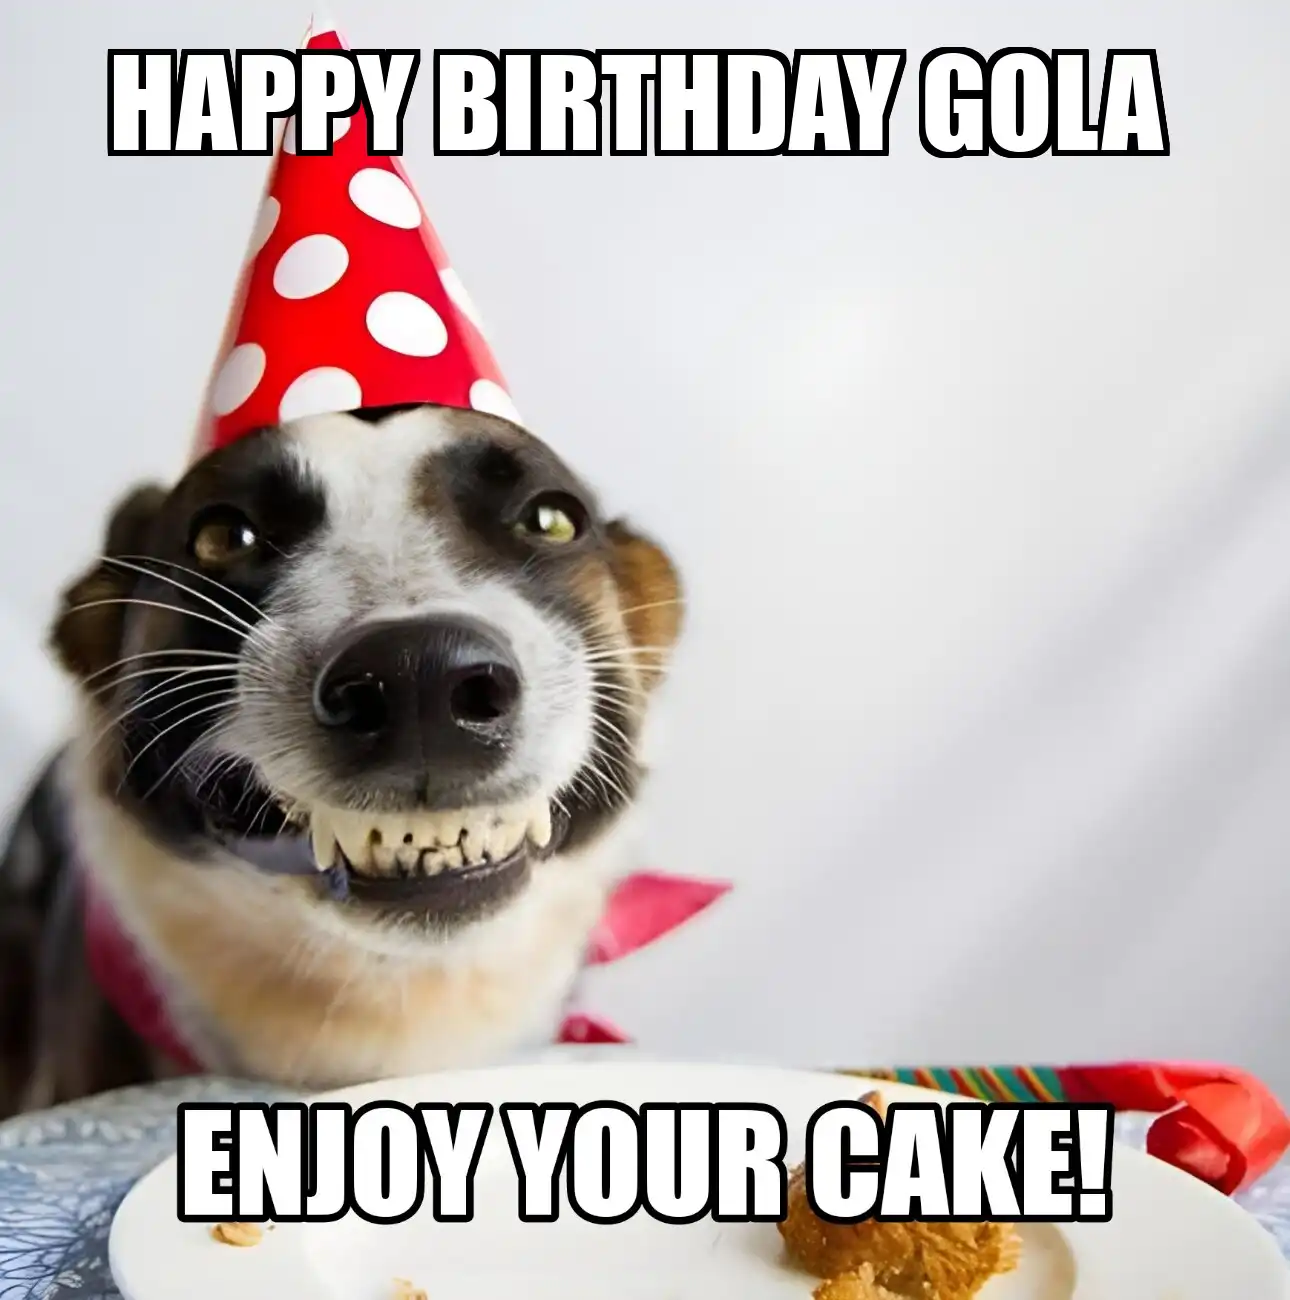 Happy Birthday Gola Enjoy Your Cake Dog Meme